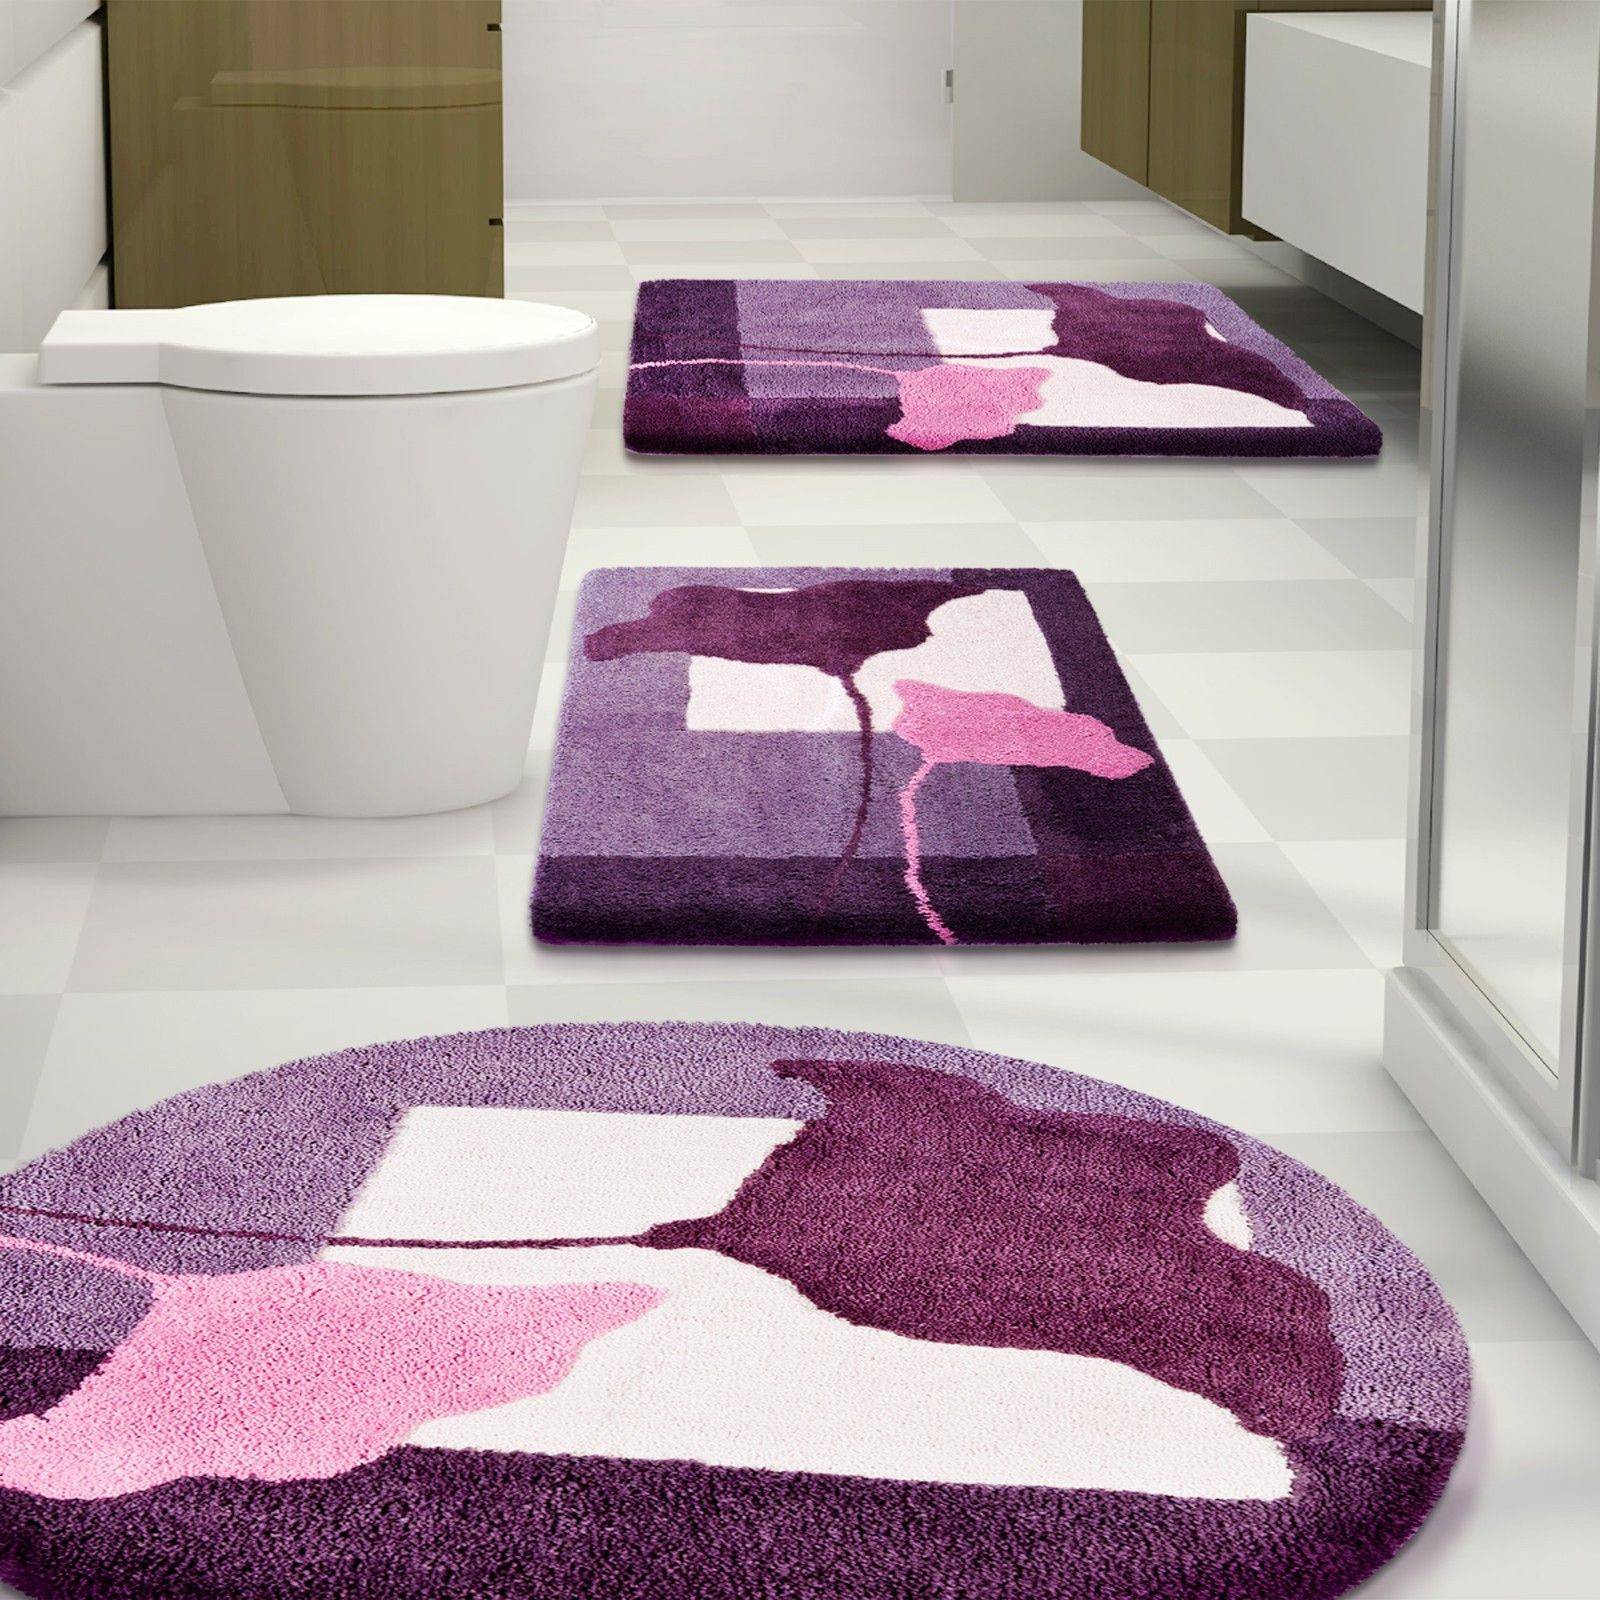 коврики в ванной комнате дизайн